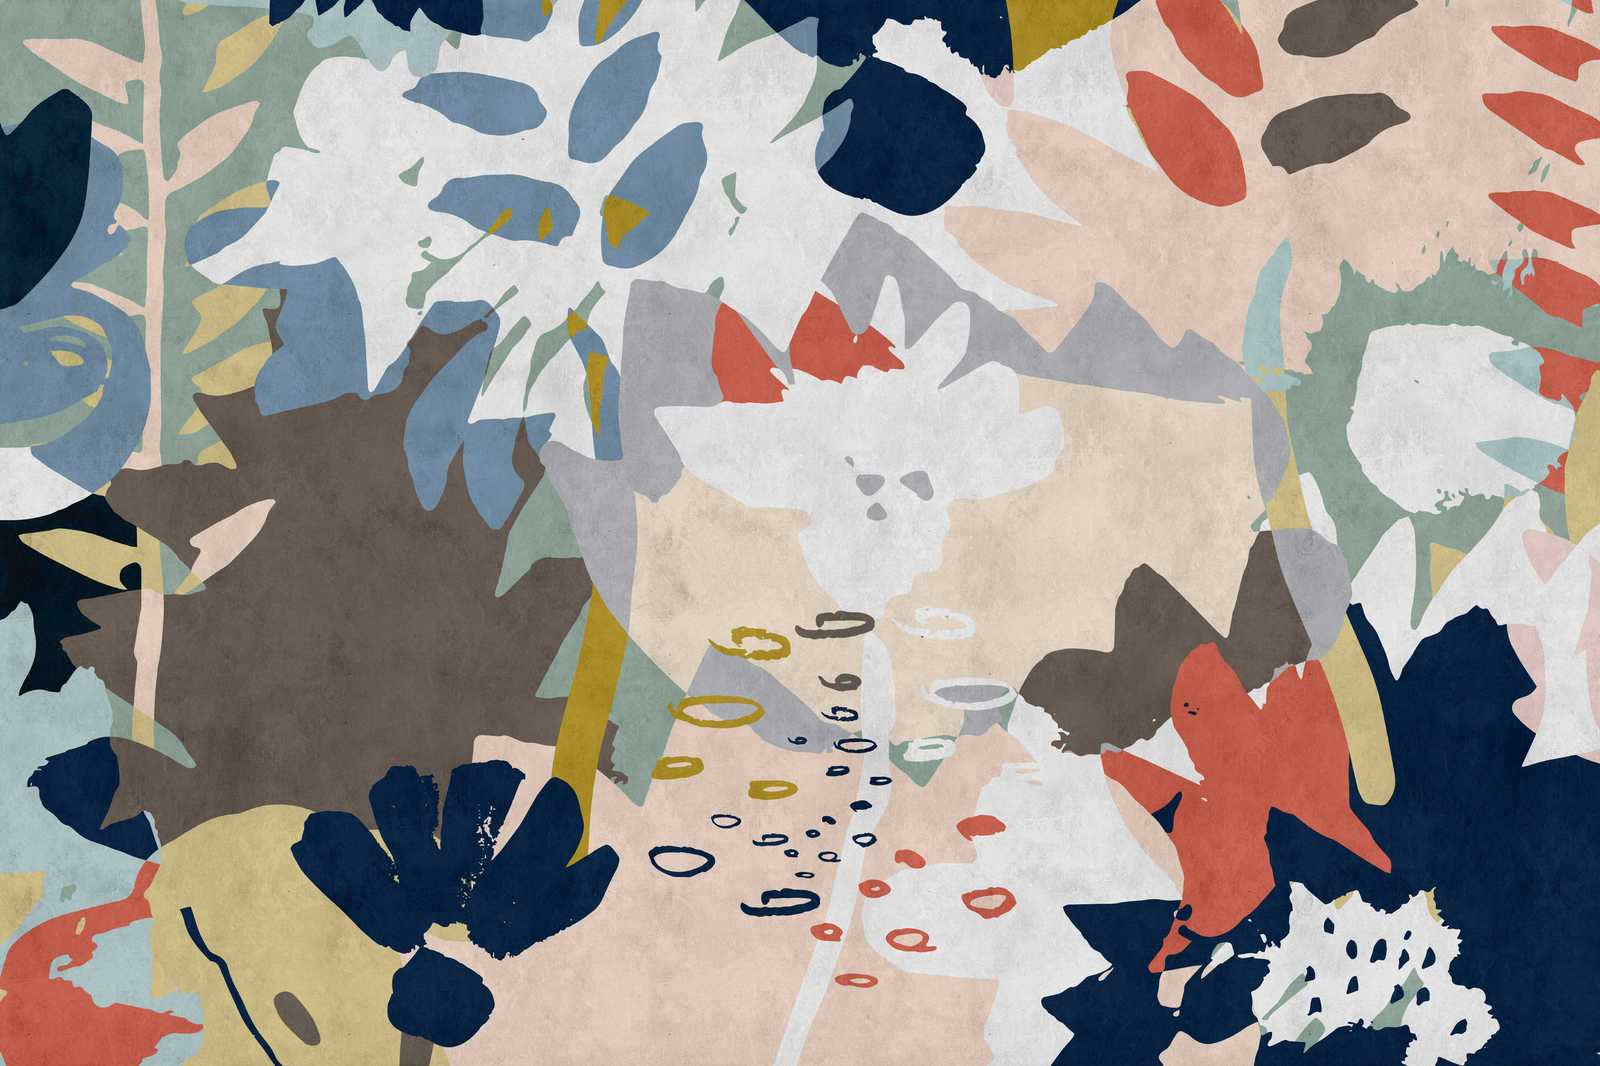             Floral Collage 4 - Toiles avec motifs de feuilles colorées - structure buvard - 0,90 m x 0,60 m
        